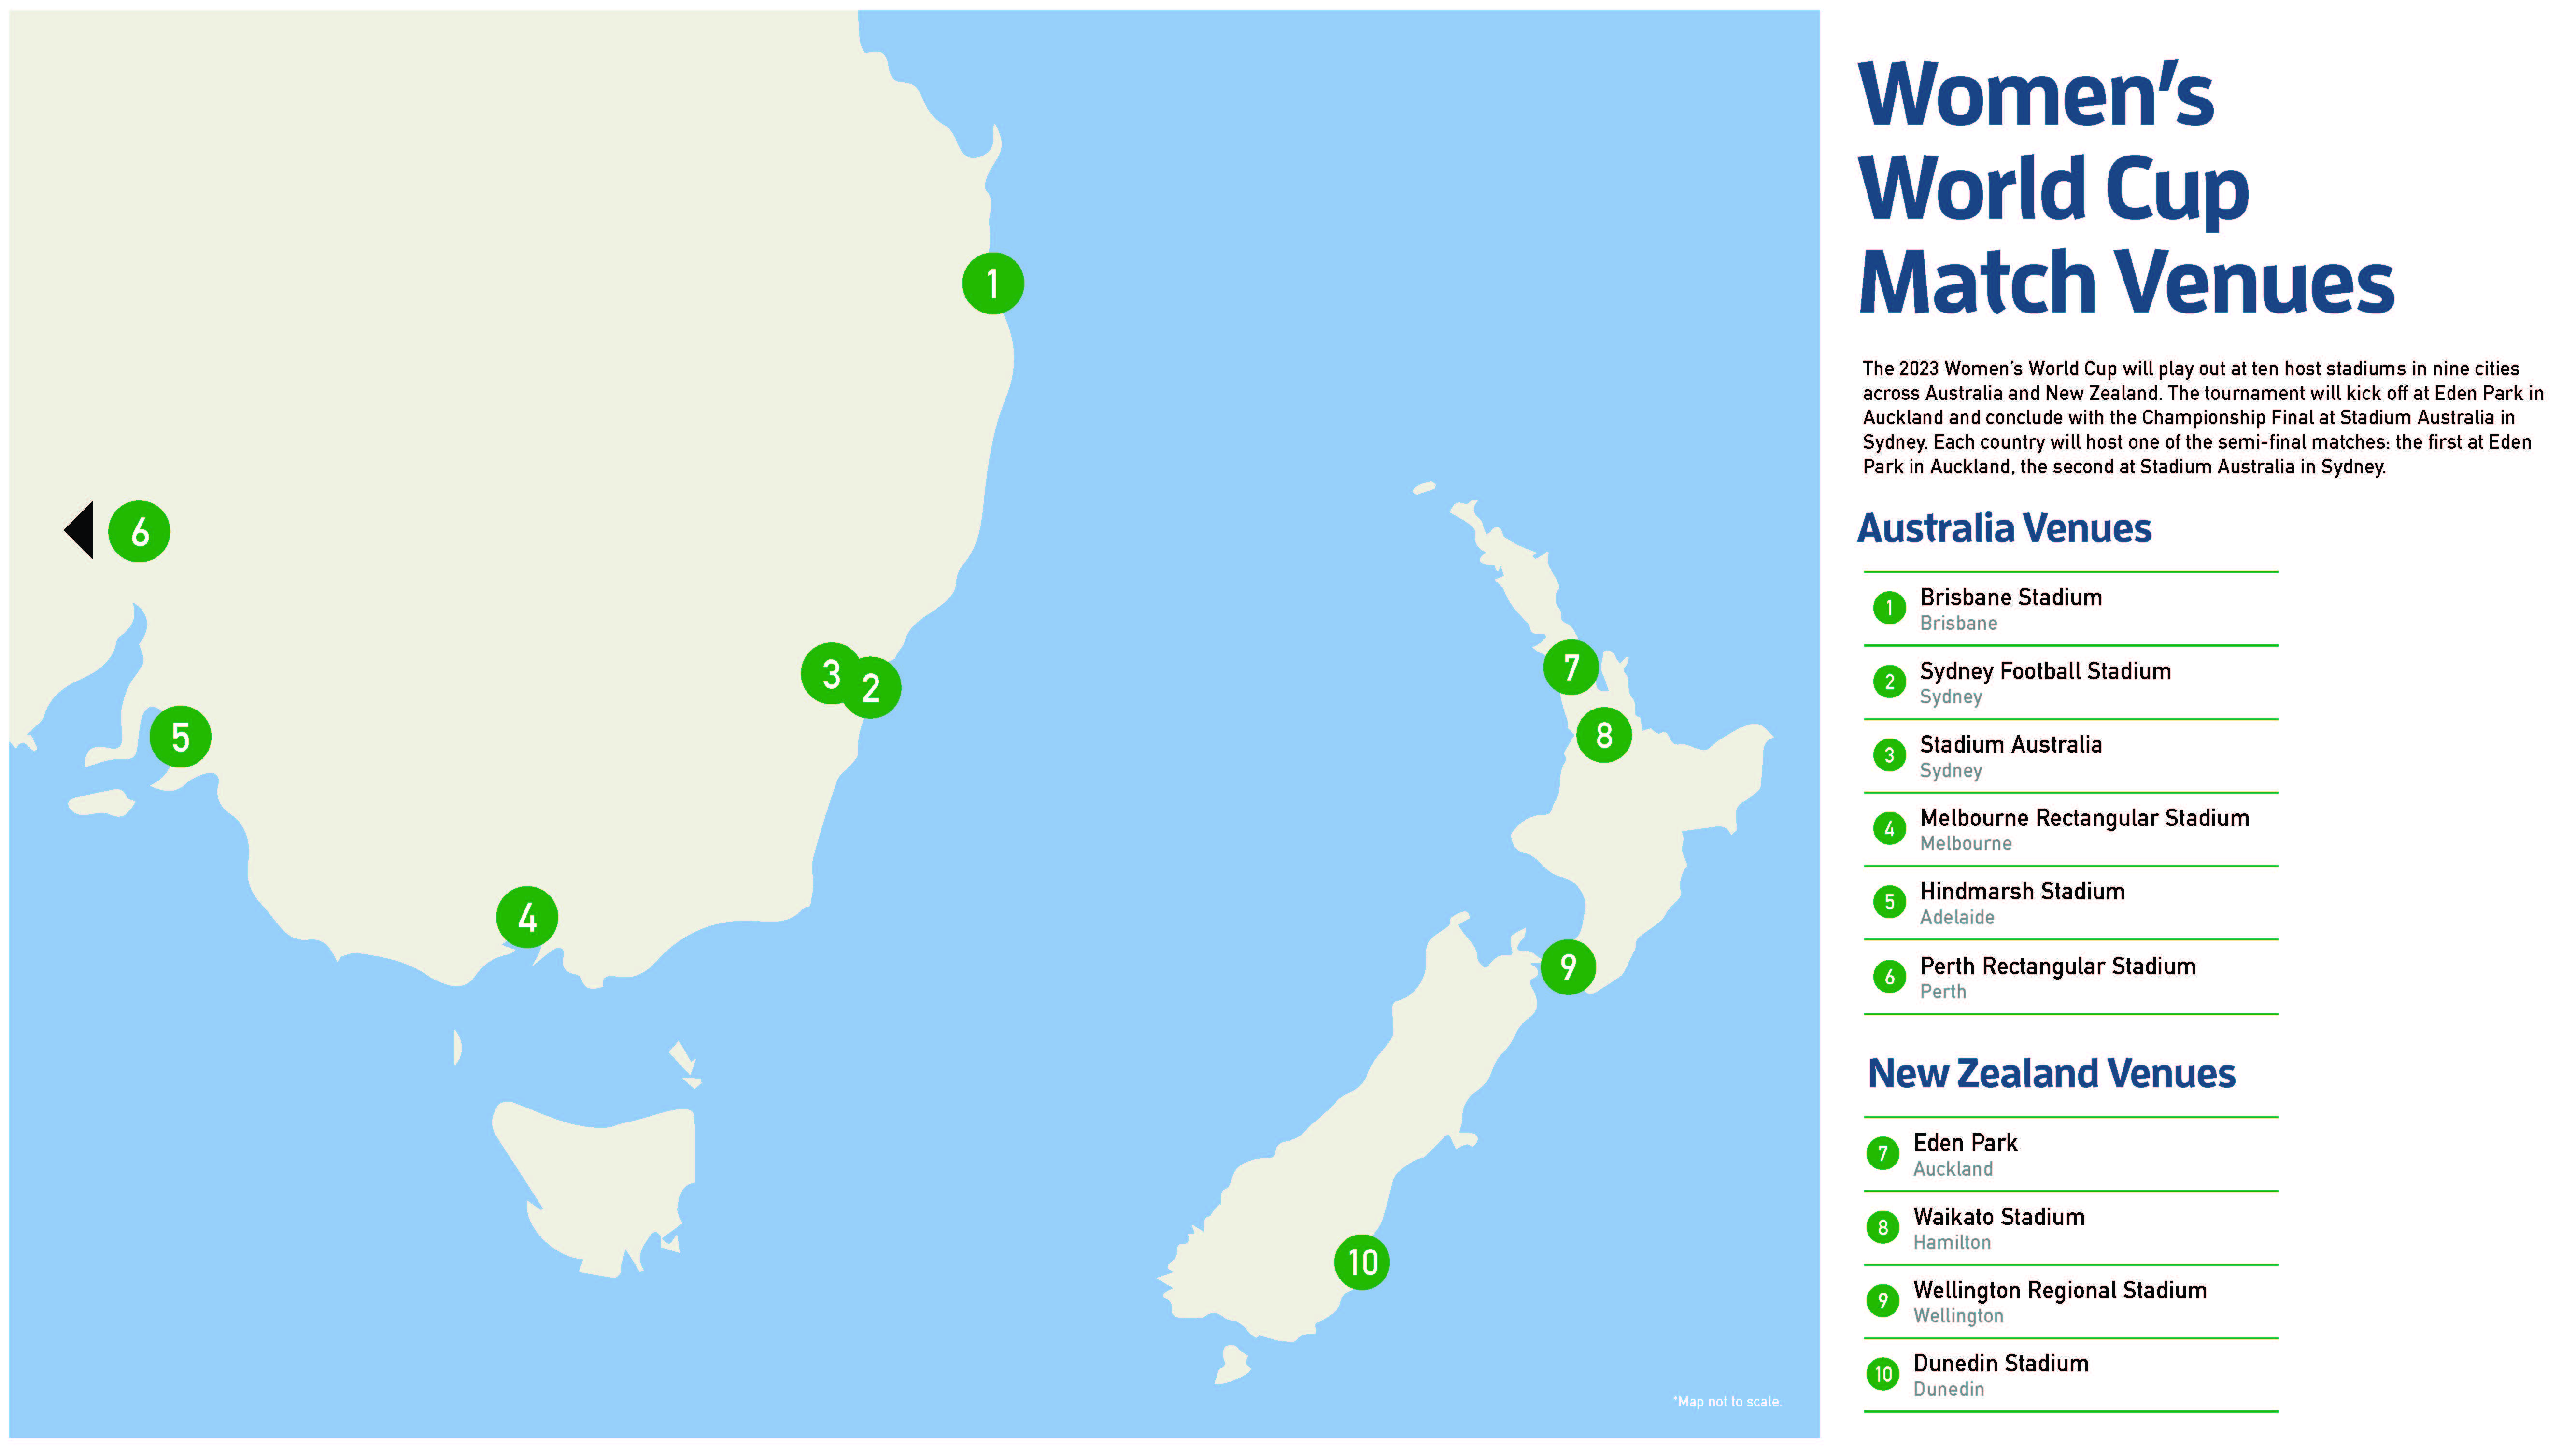 WomensWorldCup-Map-v2.jpg